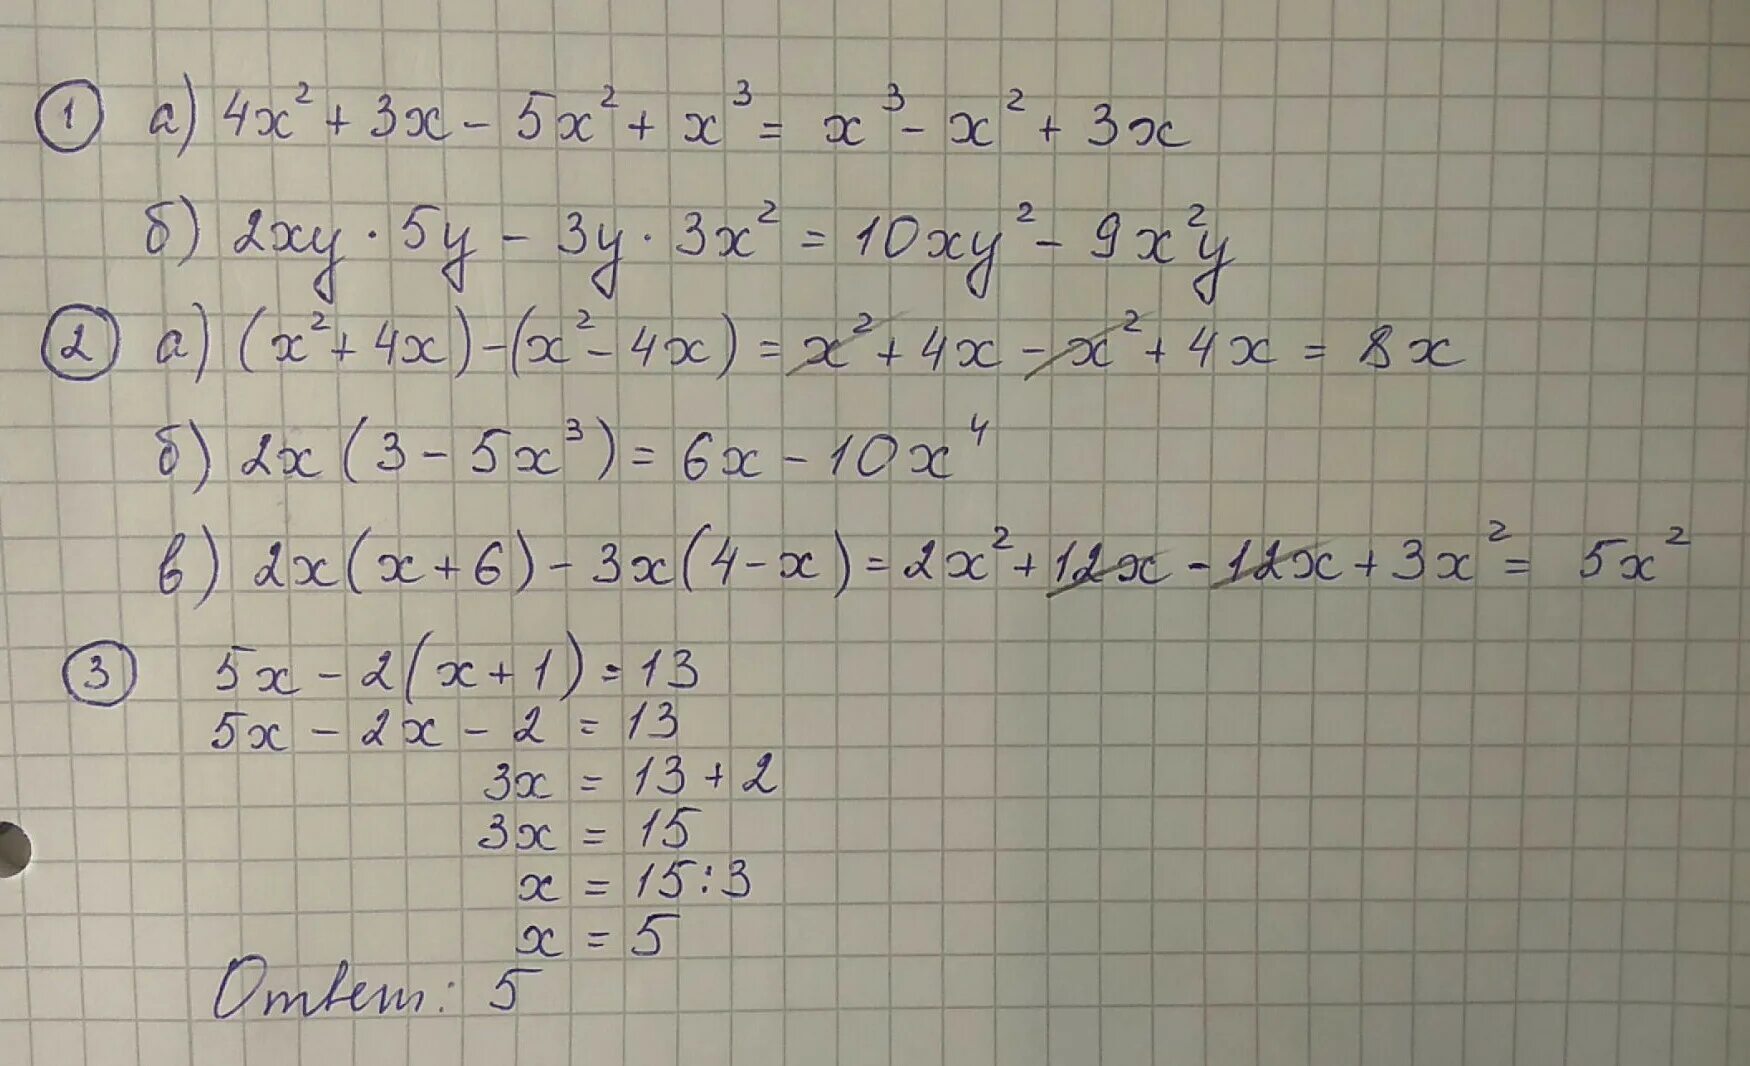 (5х2 – 3ху -у2) - (*) = х2 + 3ху. Х+2у=5 ху=2. 2ху*5у-3у*3х2. -1.2Ху2 * 6х3у5 с пояснениями.